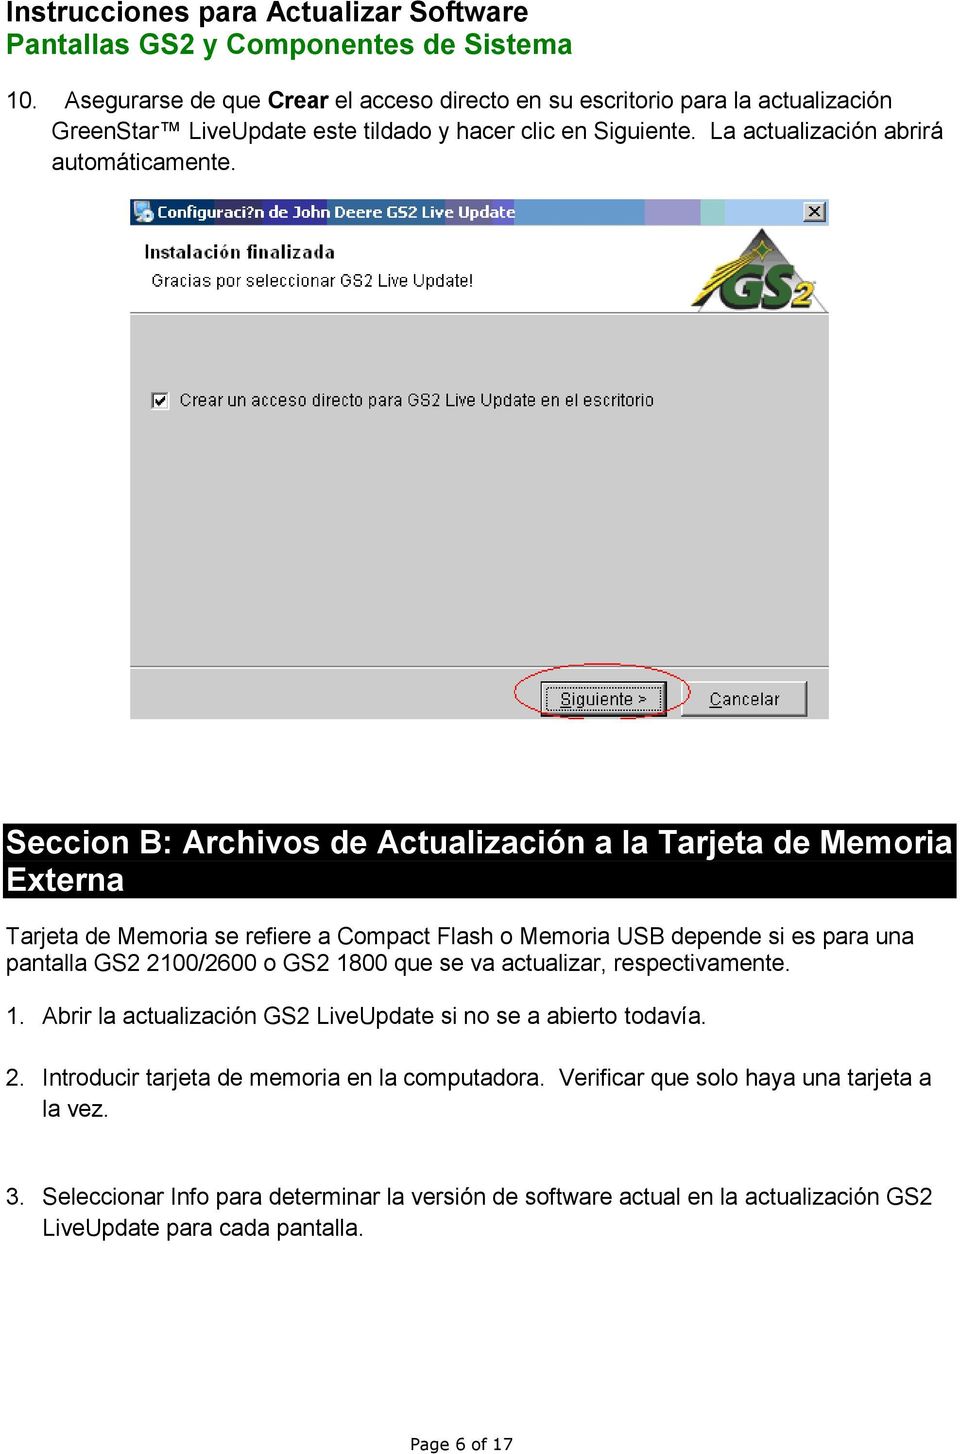 Seccion B: Archivos de Actualización a la Tarjeta de Memoria Externa Tarjeta de Memoria se refiere a Compact Flash o Memoria USB depende si es para una pantalla GS2 2100/2600 o